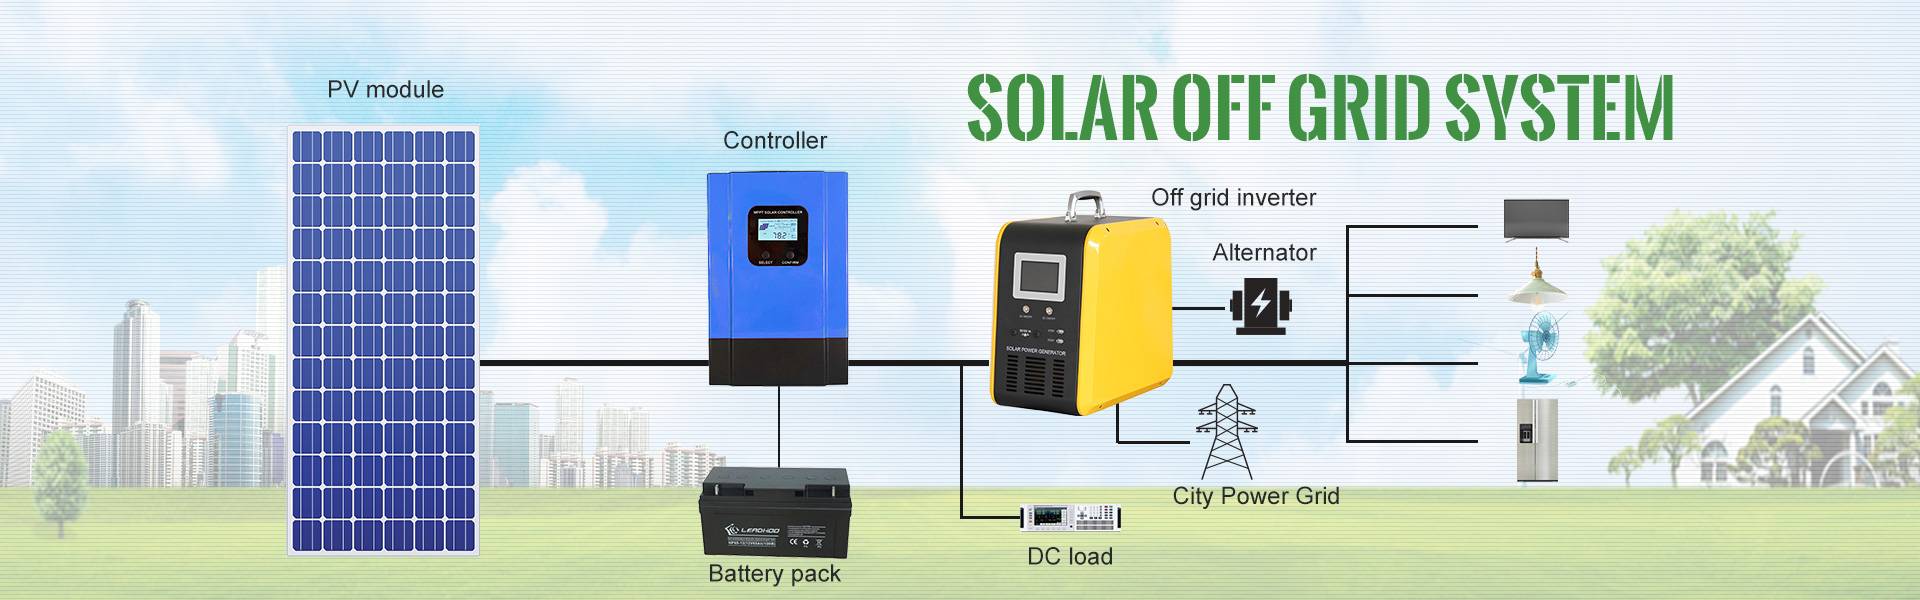 Solar off grid system